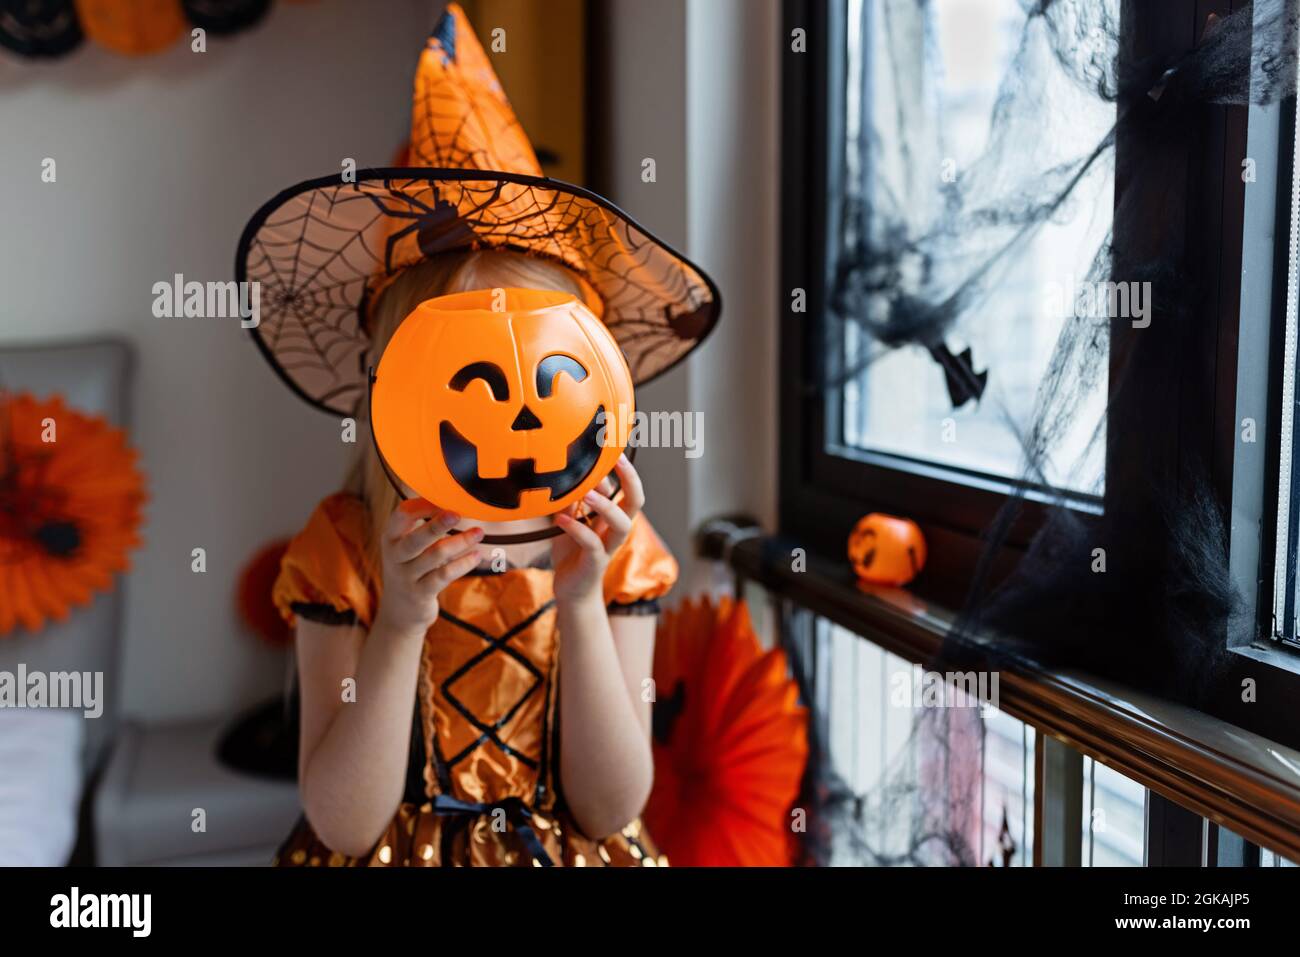 Gruseliges kleines Mädchen im Hexenkostüm, Hut mit großem Kürbis, der  Halloween-Urlaub feiert. Sitzend auf Sessel im Mantel mit Kürbis.  Stilvolles Bild. Horro Stockfotografie - Alamy